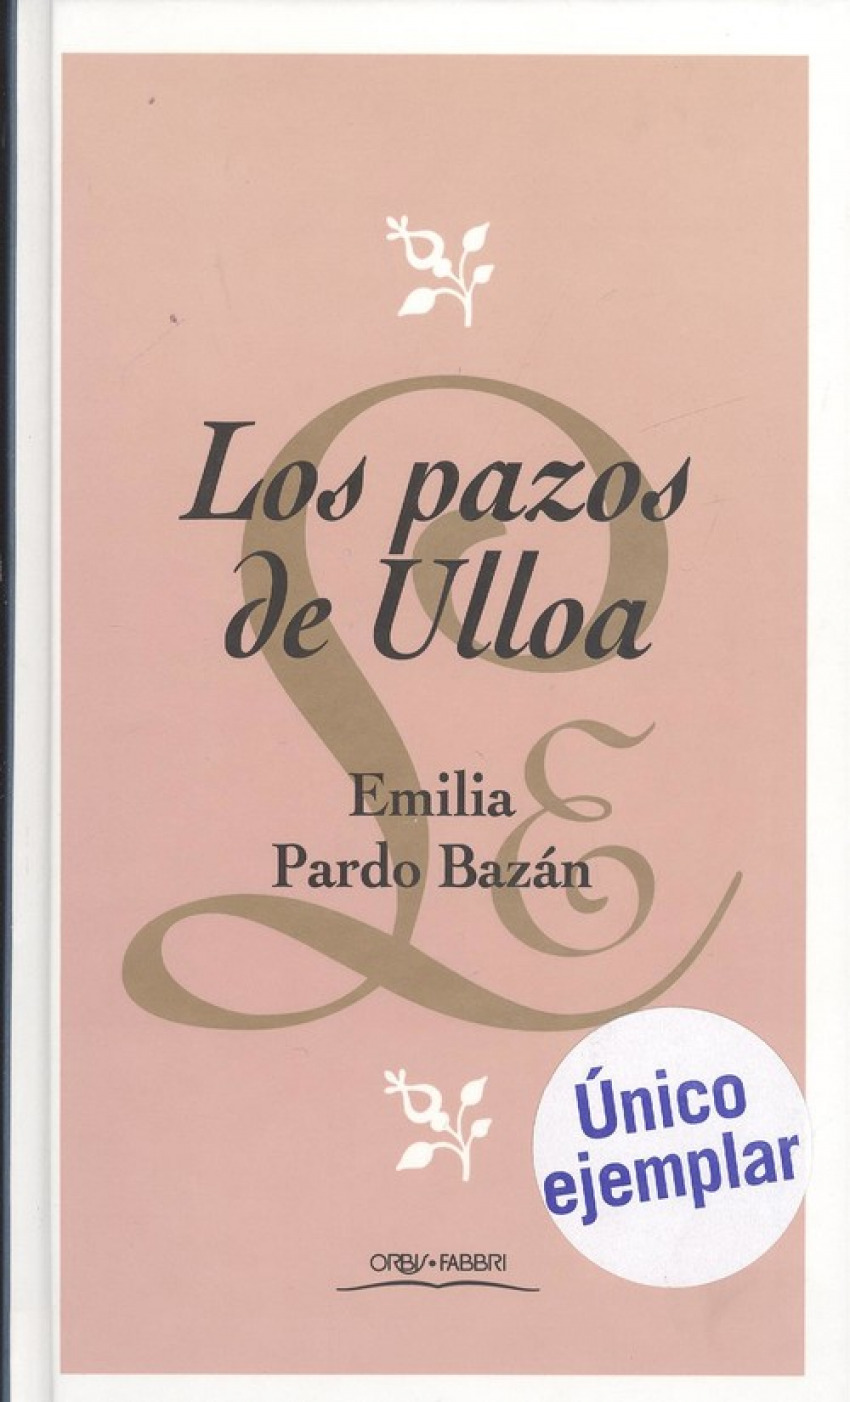 Los pazos de ulloa - Pardo Bazan, Emilia